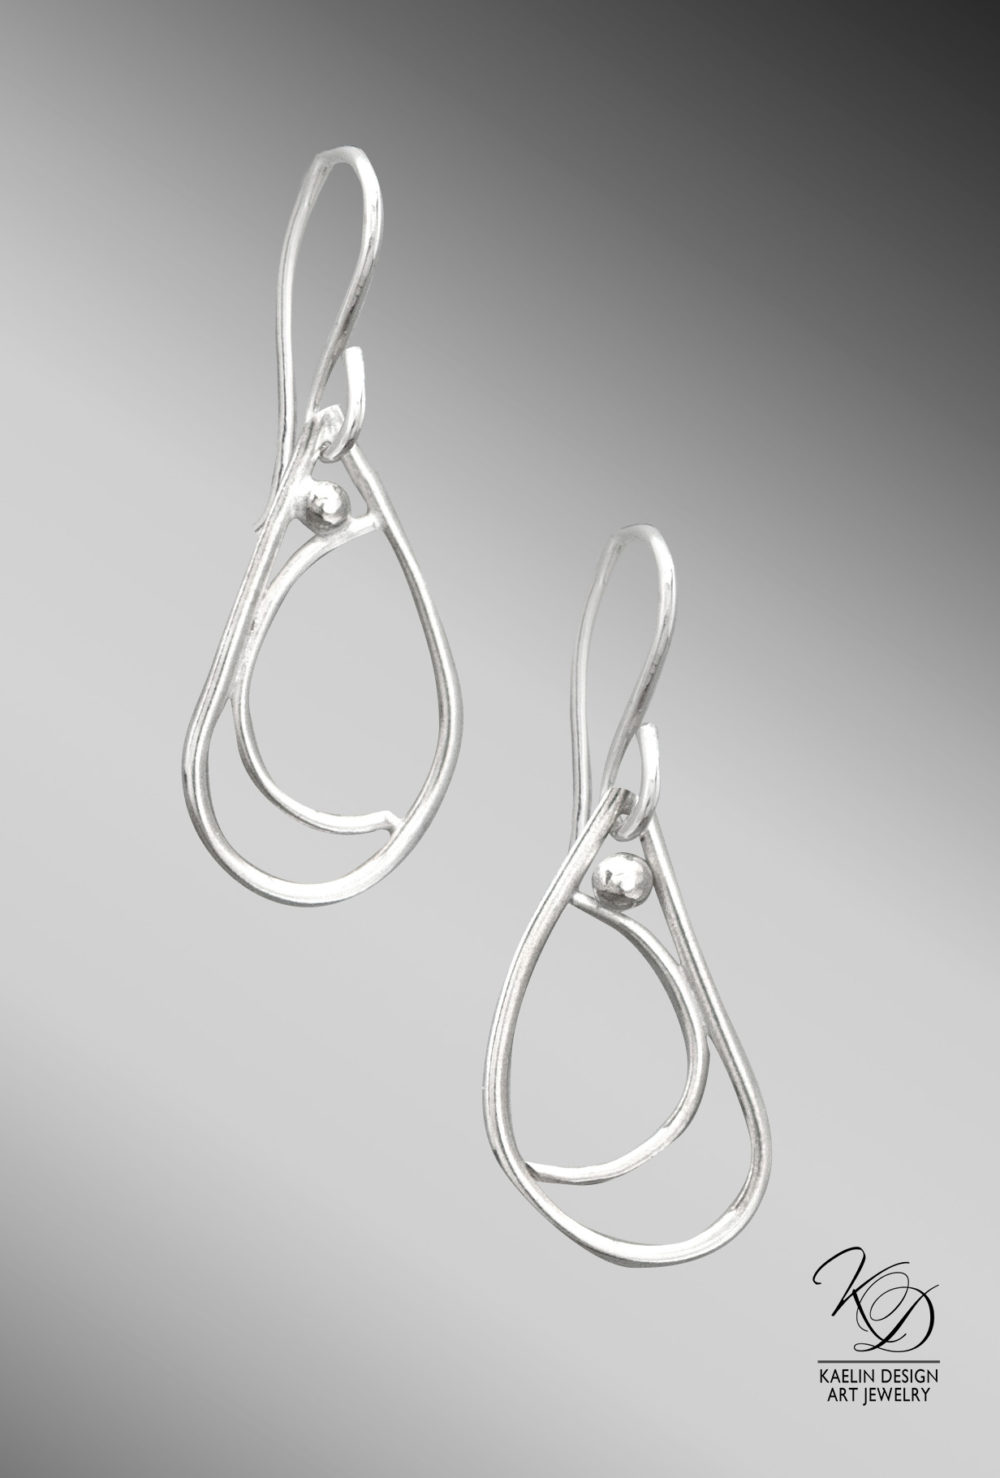 Calm Seas Sterling Silver Earrings by Kaelin Design Fine Art Jewelry